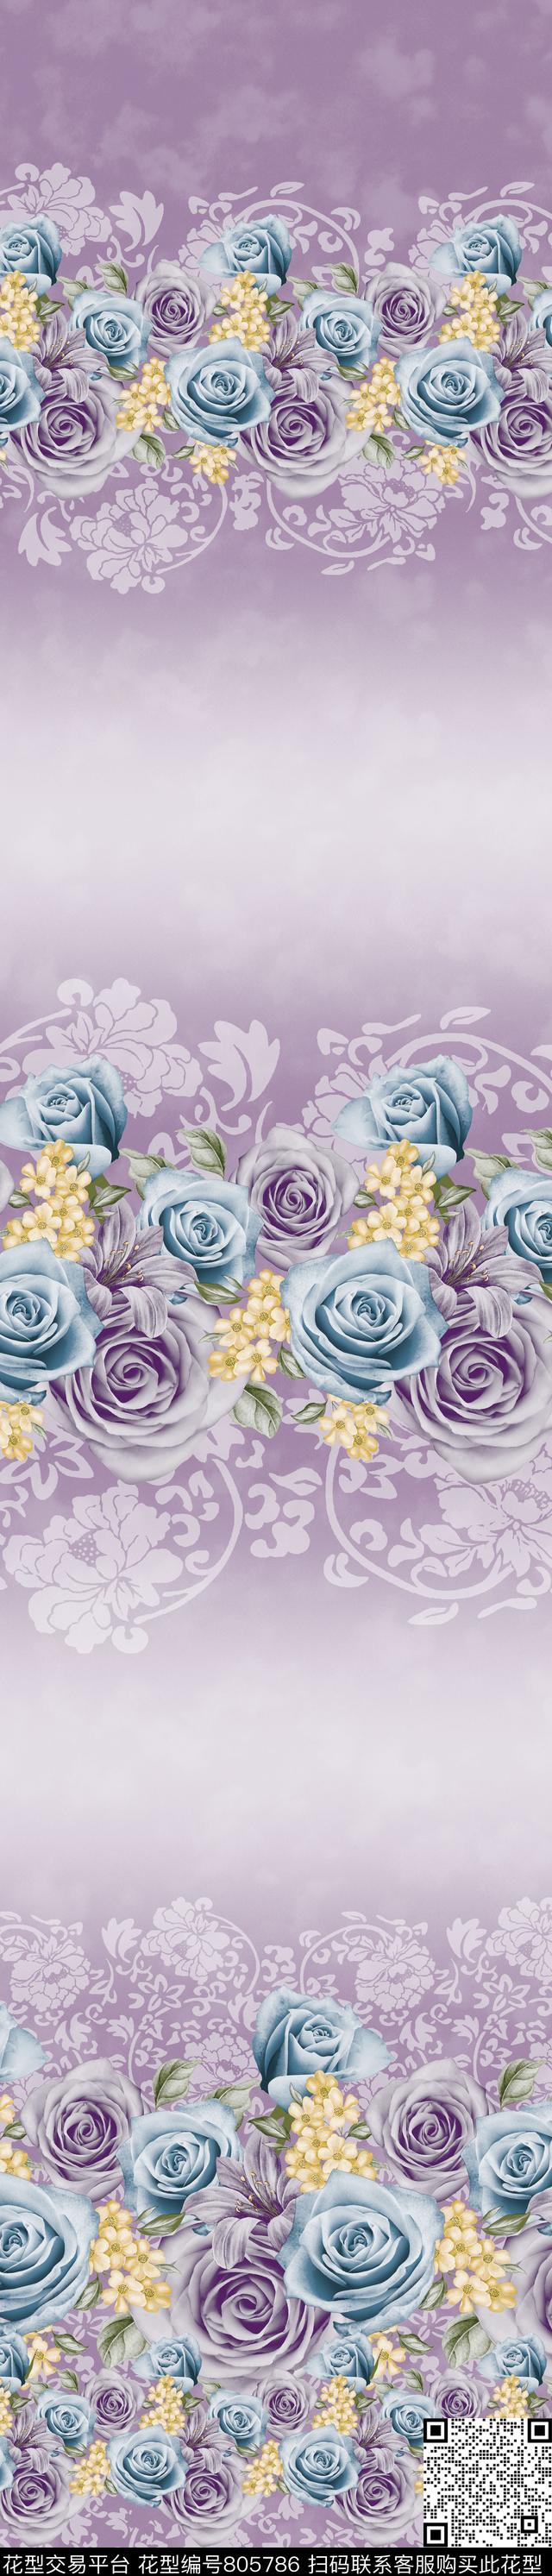 YJH170316c.jpg - 805786 - 玫瑰 花朵 花卉 - 传统印花花型 － 窗帘花型设计 － 瓦栏